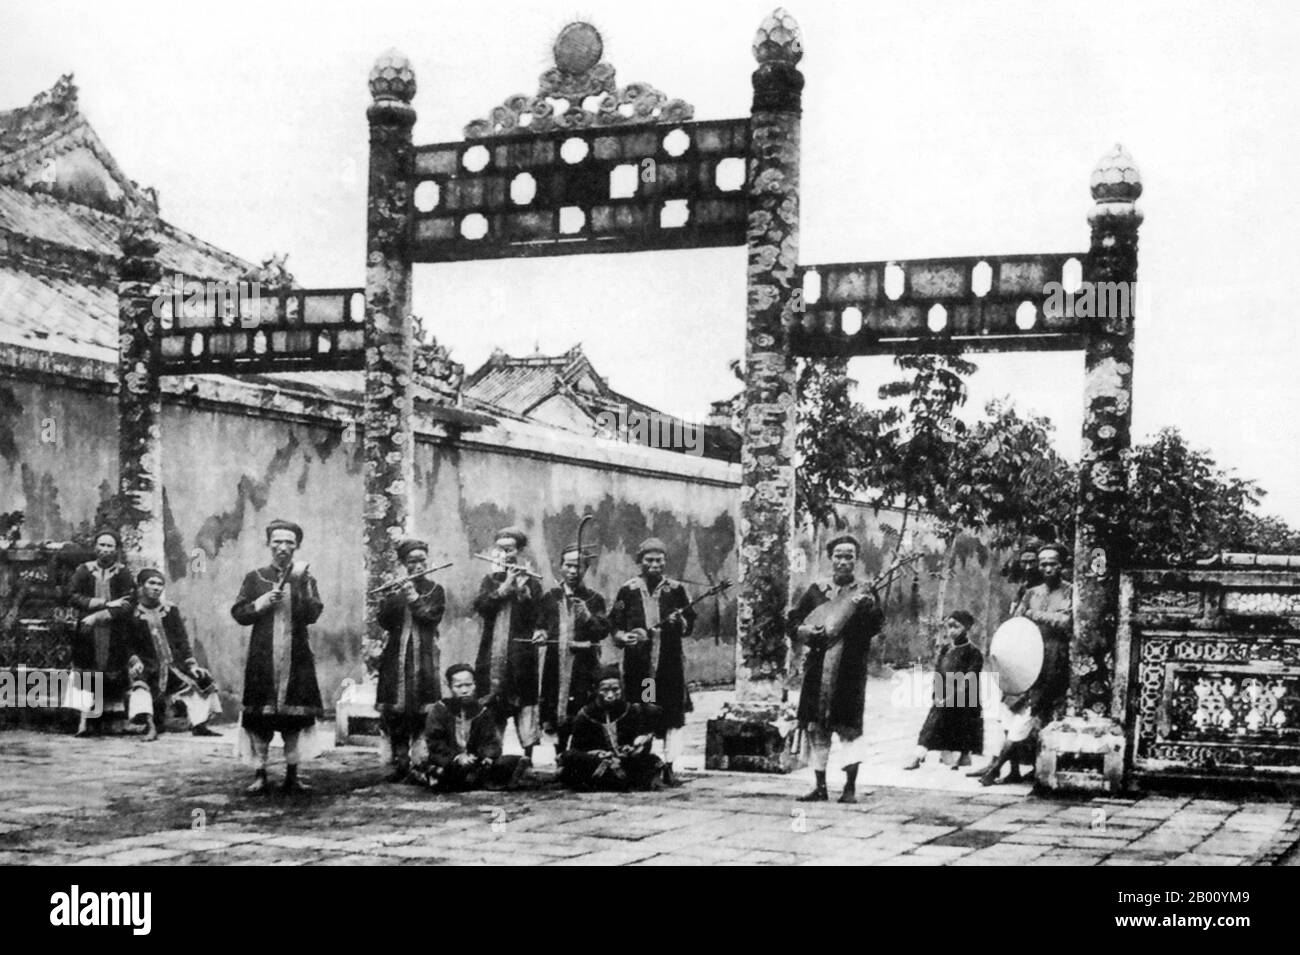 Vietnam : orchestre royal, ville impériale, Hue (début du XXe siècle). Entre 1802 et 1945, Hue fut la capitale impériale de la dynastie Nguyen, un royaume féodal qui domina une grande partie du sud du Vietnam du XVIIe au XIXe siècle. En 1775, quand Trinh Sam l'a capturé, il était connu sous le nom de Phu Xuan. En 1802, Nguyen Phuc Anh (plus tard l'empereur Gia long) réussit à établir son contrôle sur l'ensemble du Vietnam, faisant ainsi de Hue la capitale nationale jusqu'en 1945, lorsque l'empereur Bao Dai abdiqué et un gouvernement communiste a été établi à Hanoi. Banque D'Images